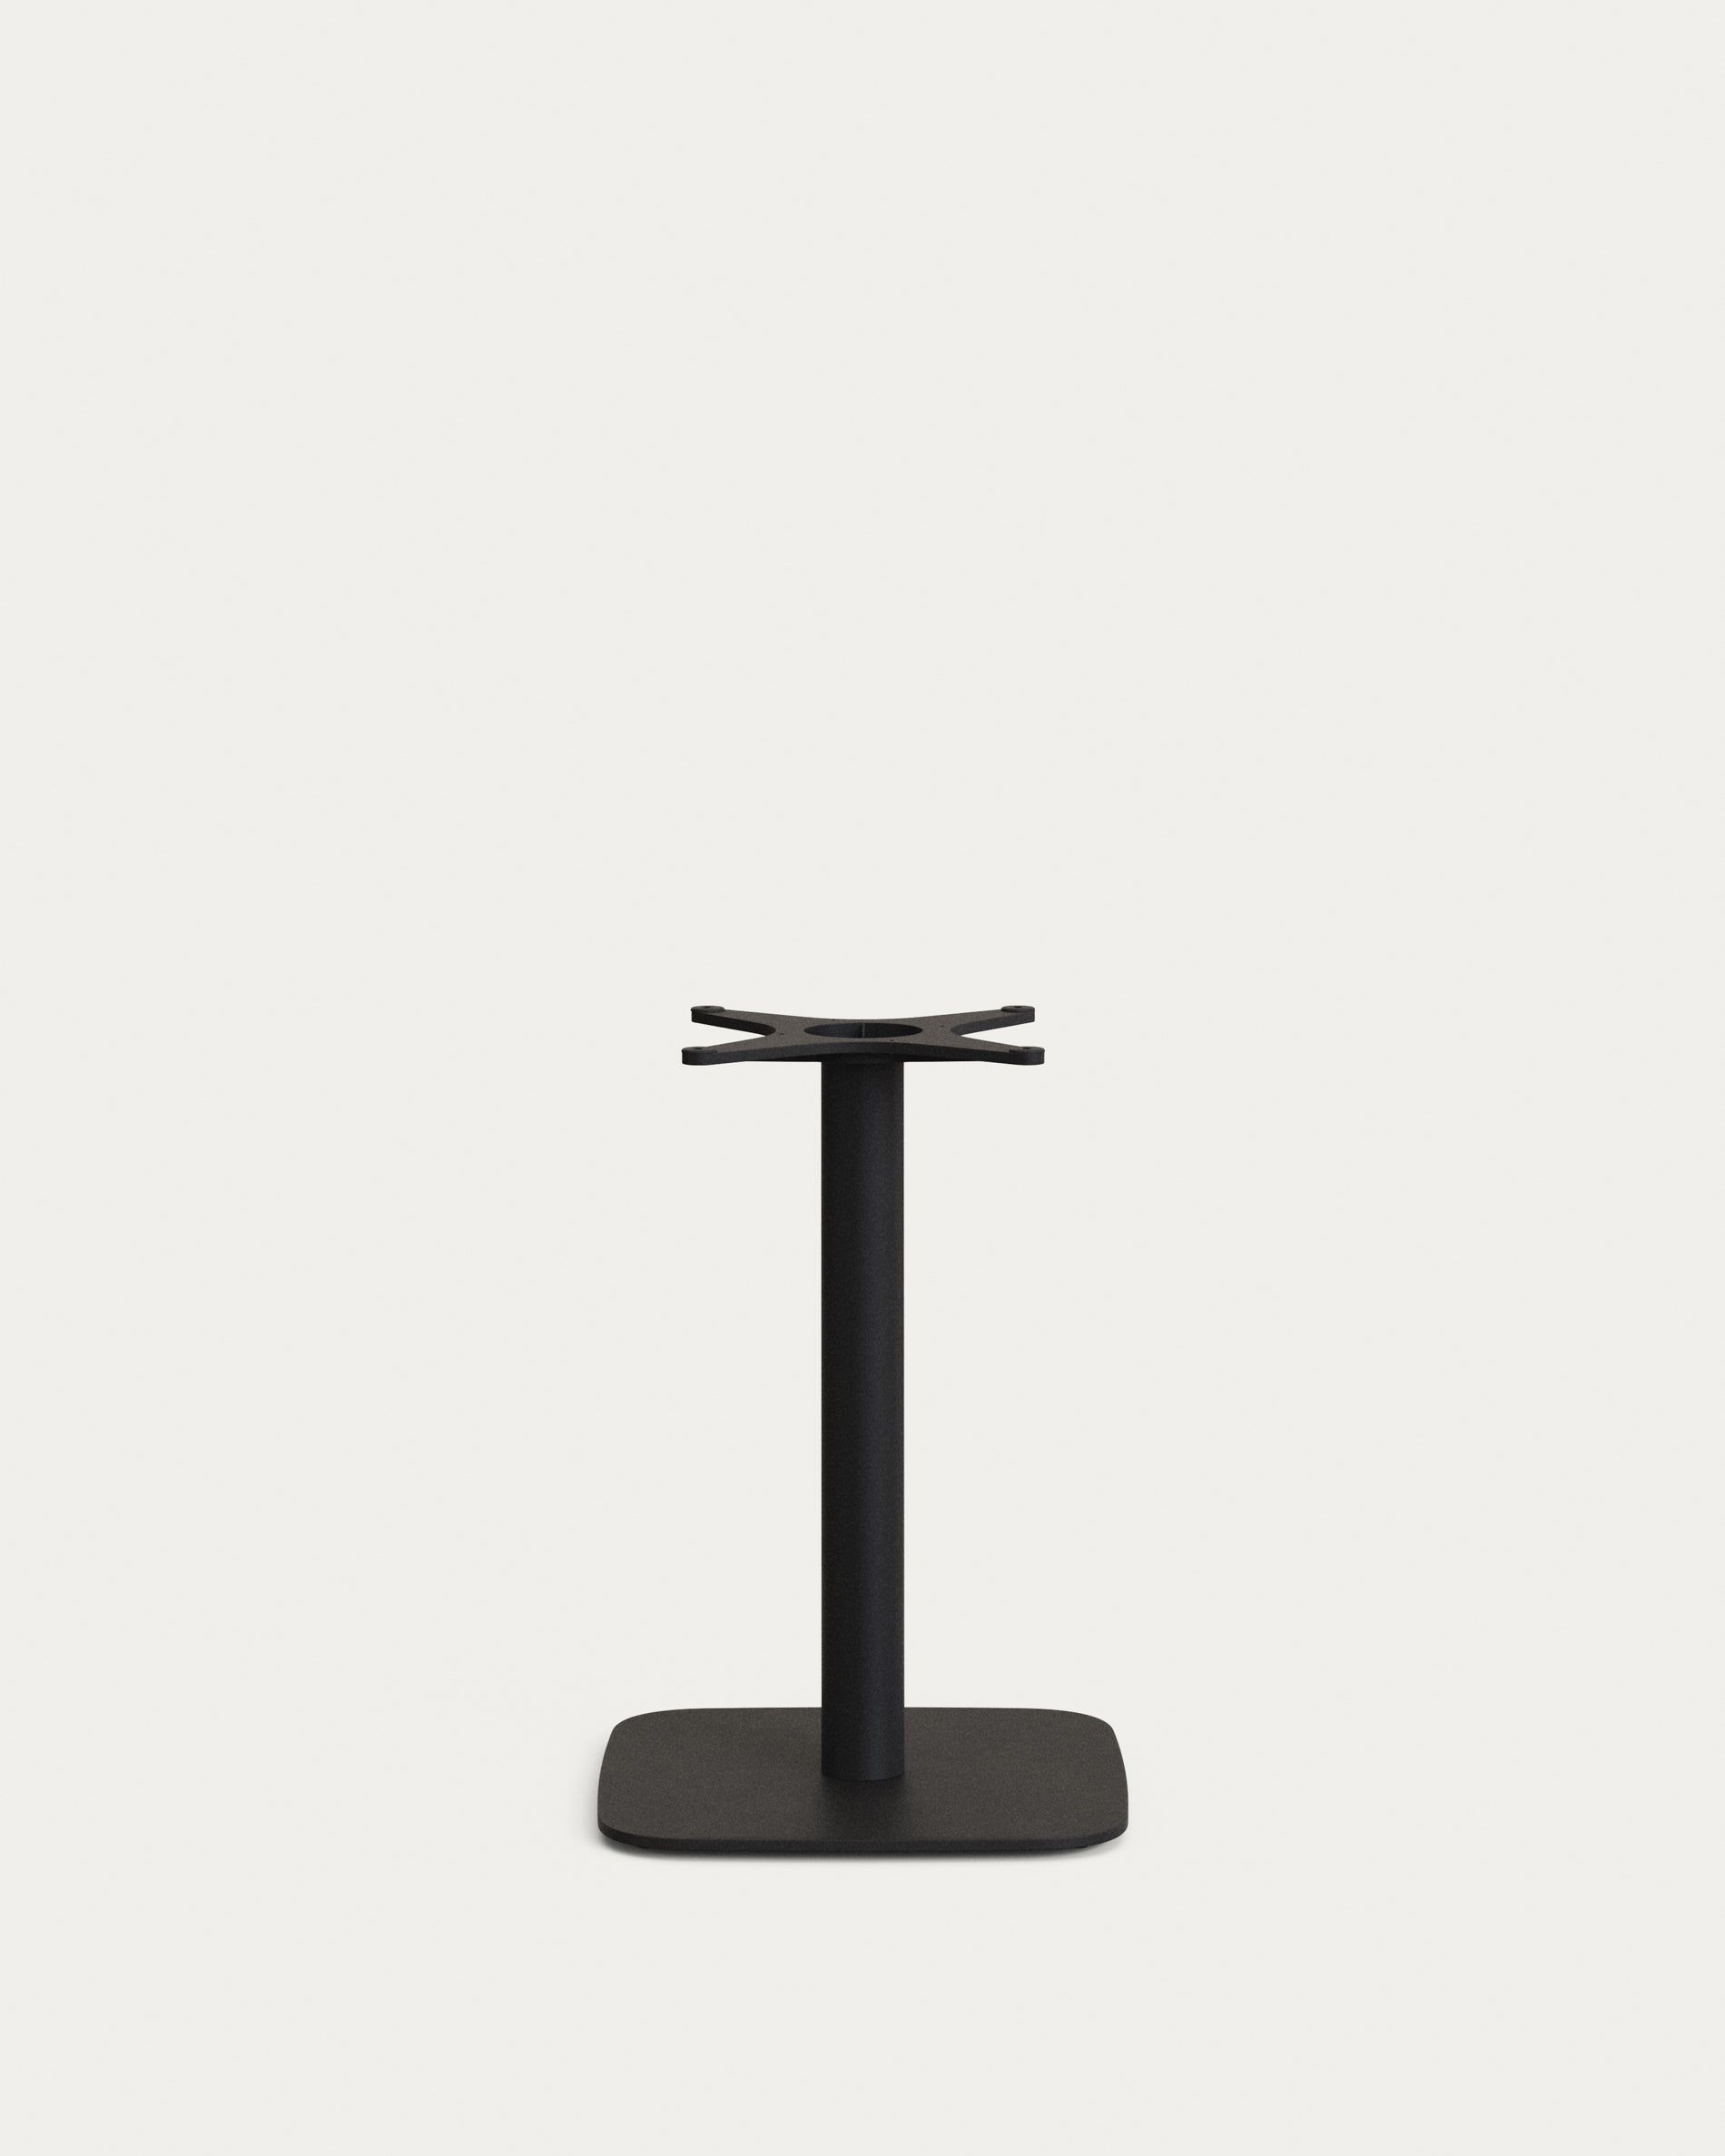 Saura bárasztal fekete festett metálból, fehér terrazzo tetejével, 70 x 70 x 70 cm